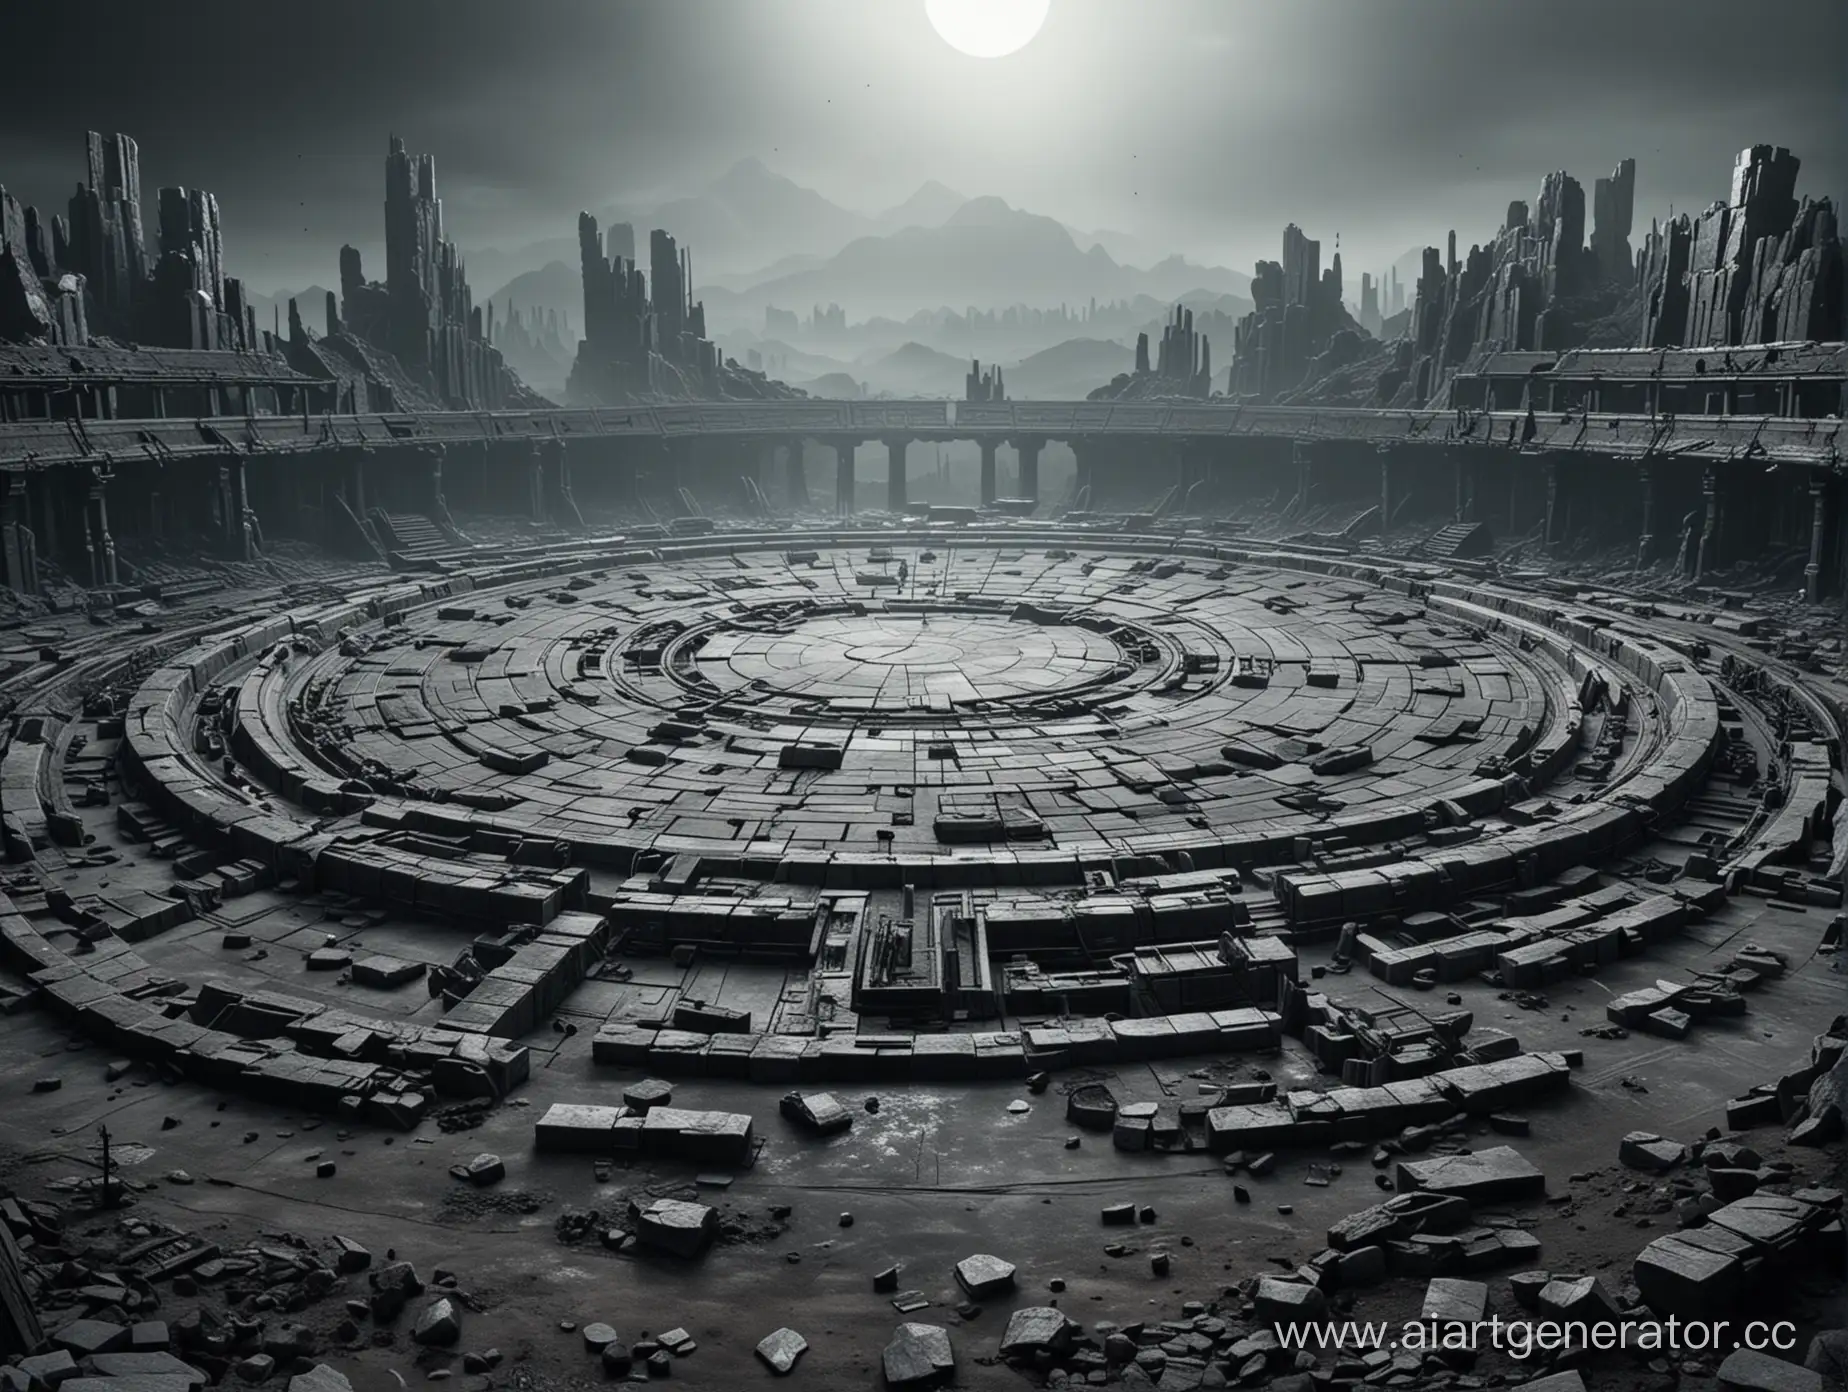 Огромная пустая круглая арена для битв из камня на серой планете, в темных тонах, в стиле постапокалиптики.